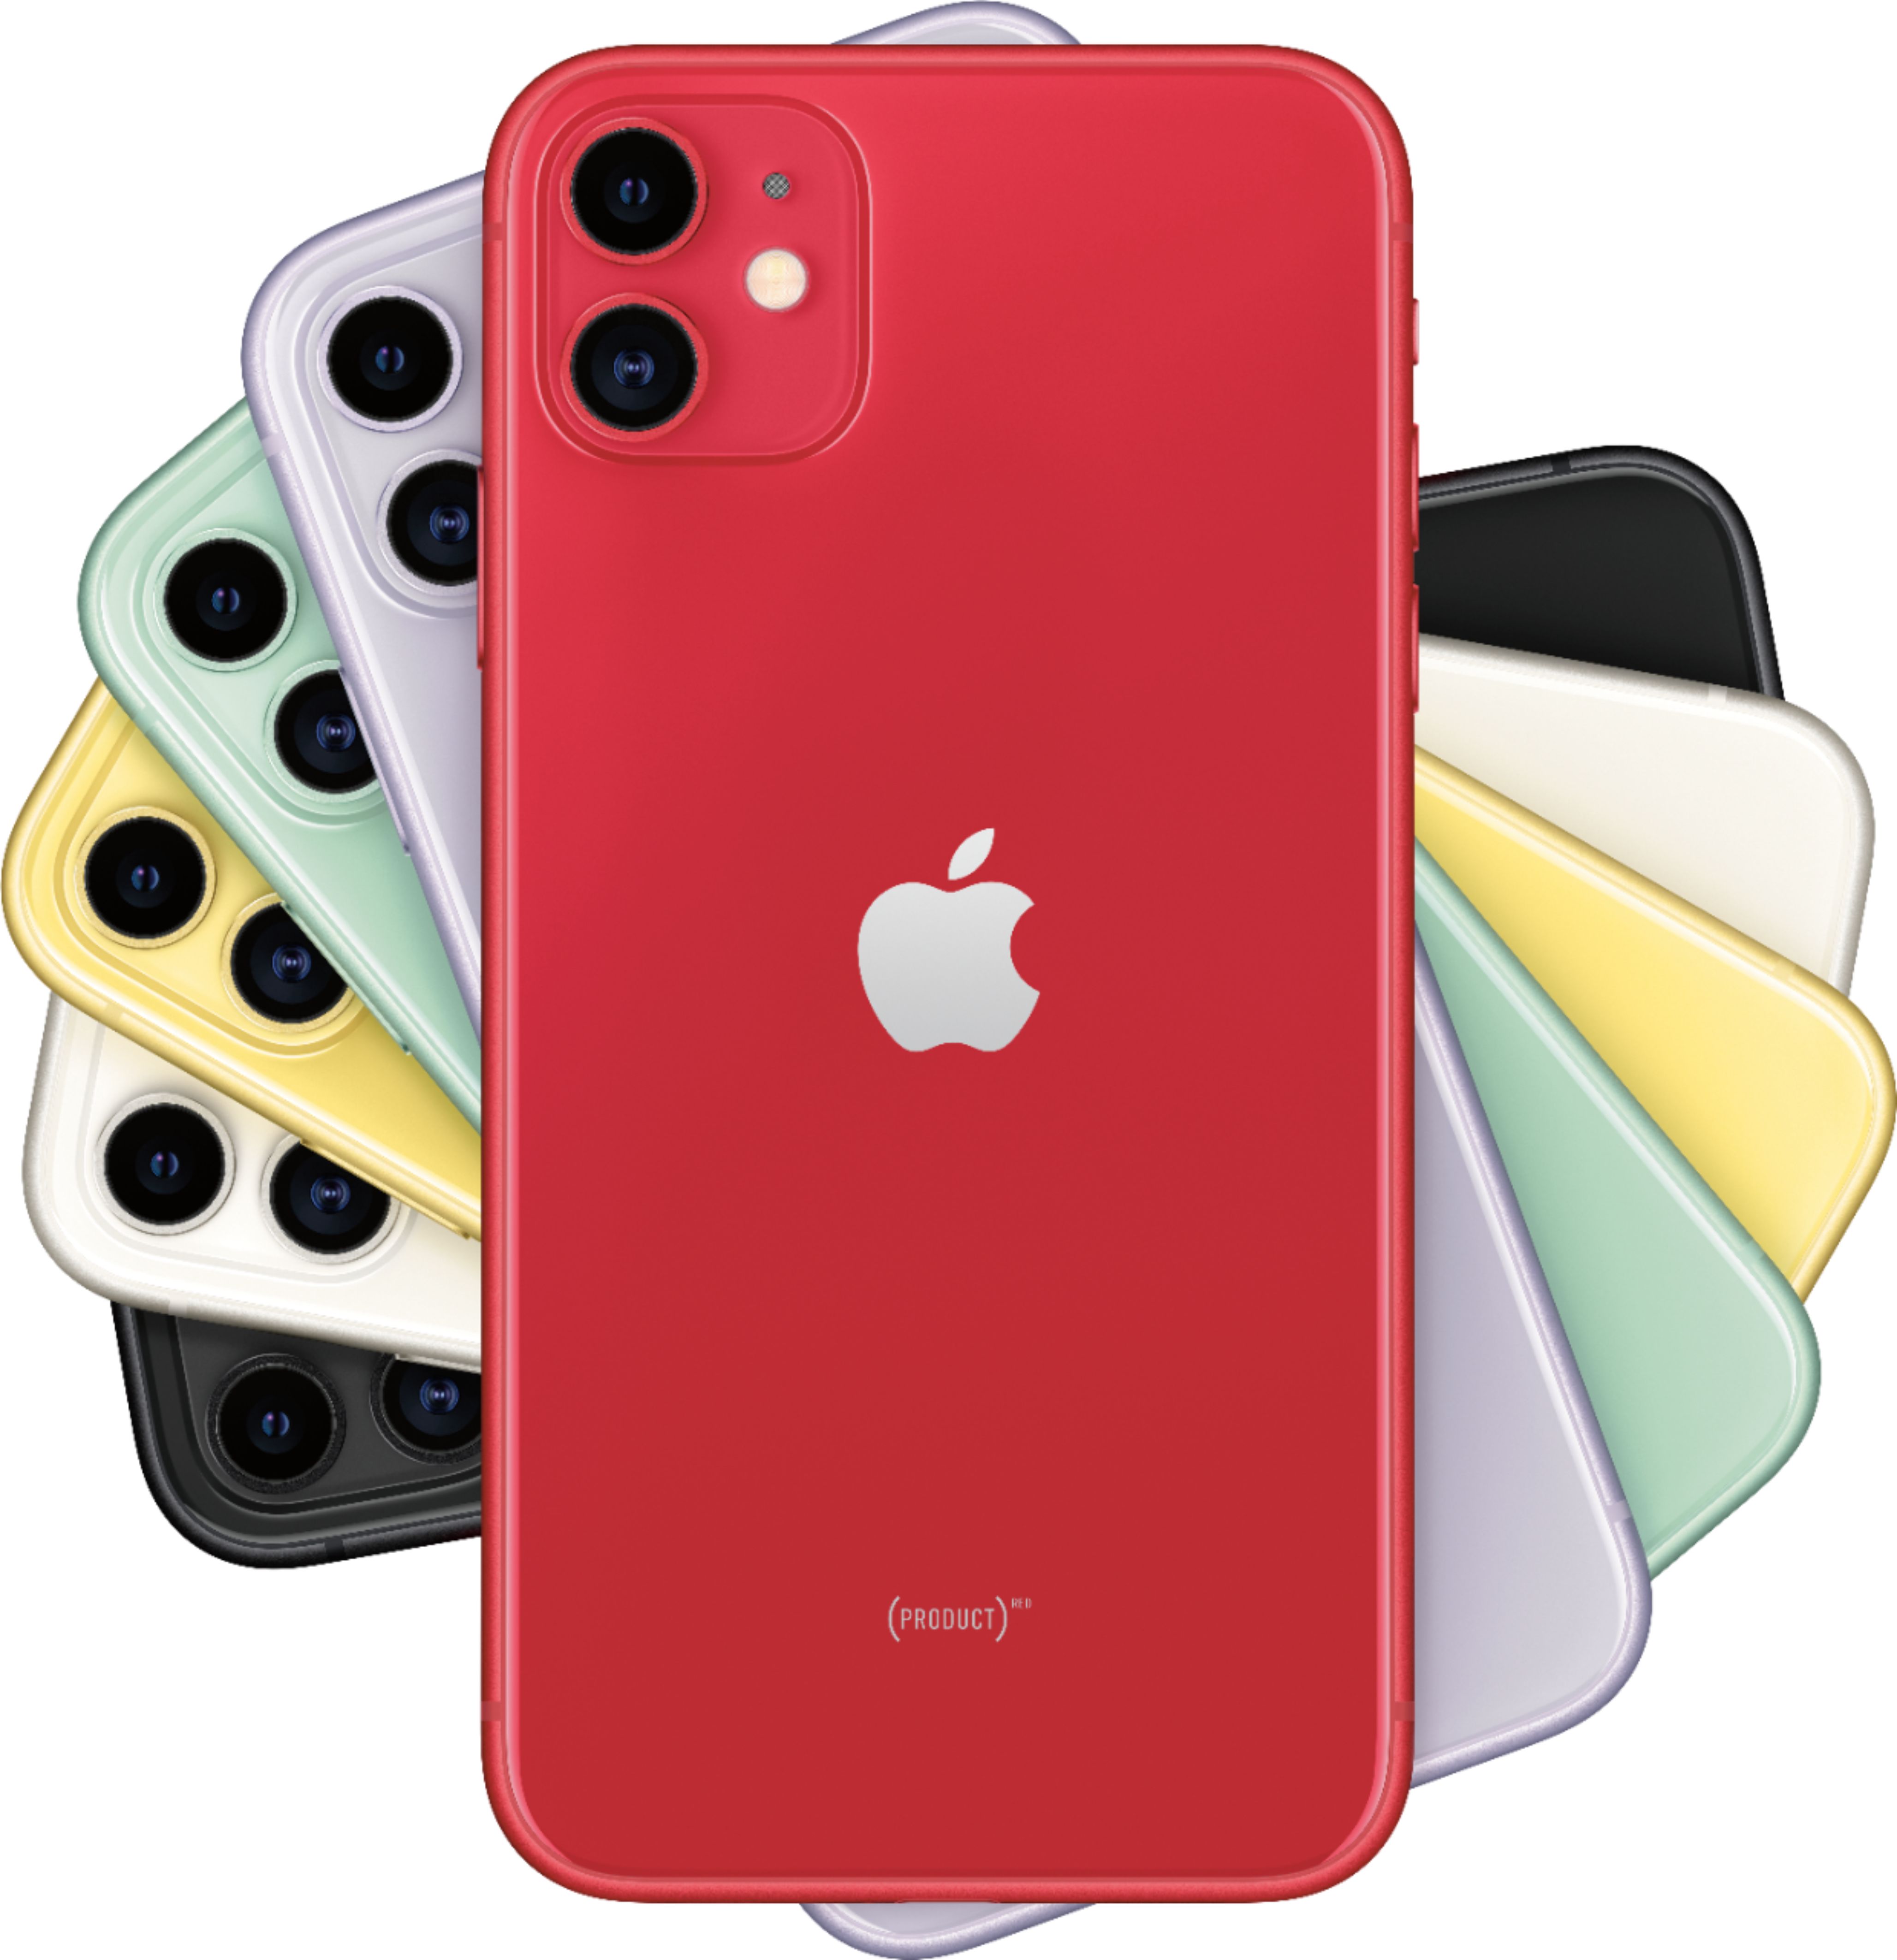 【ジャンク】iPhone11 RED 64GBモデル